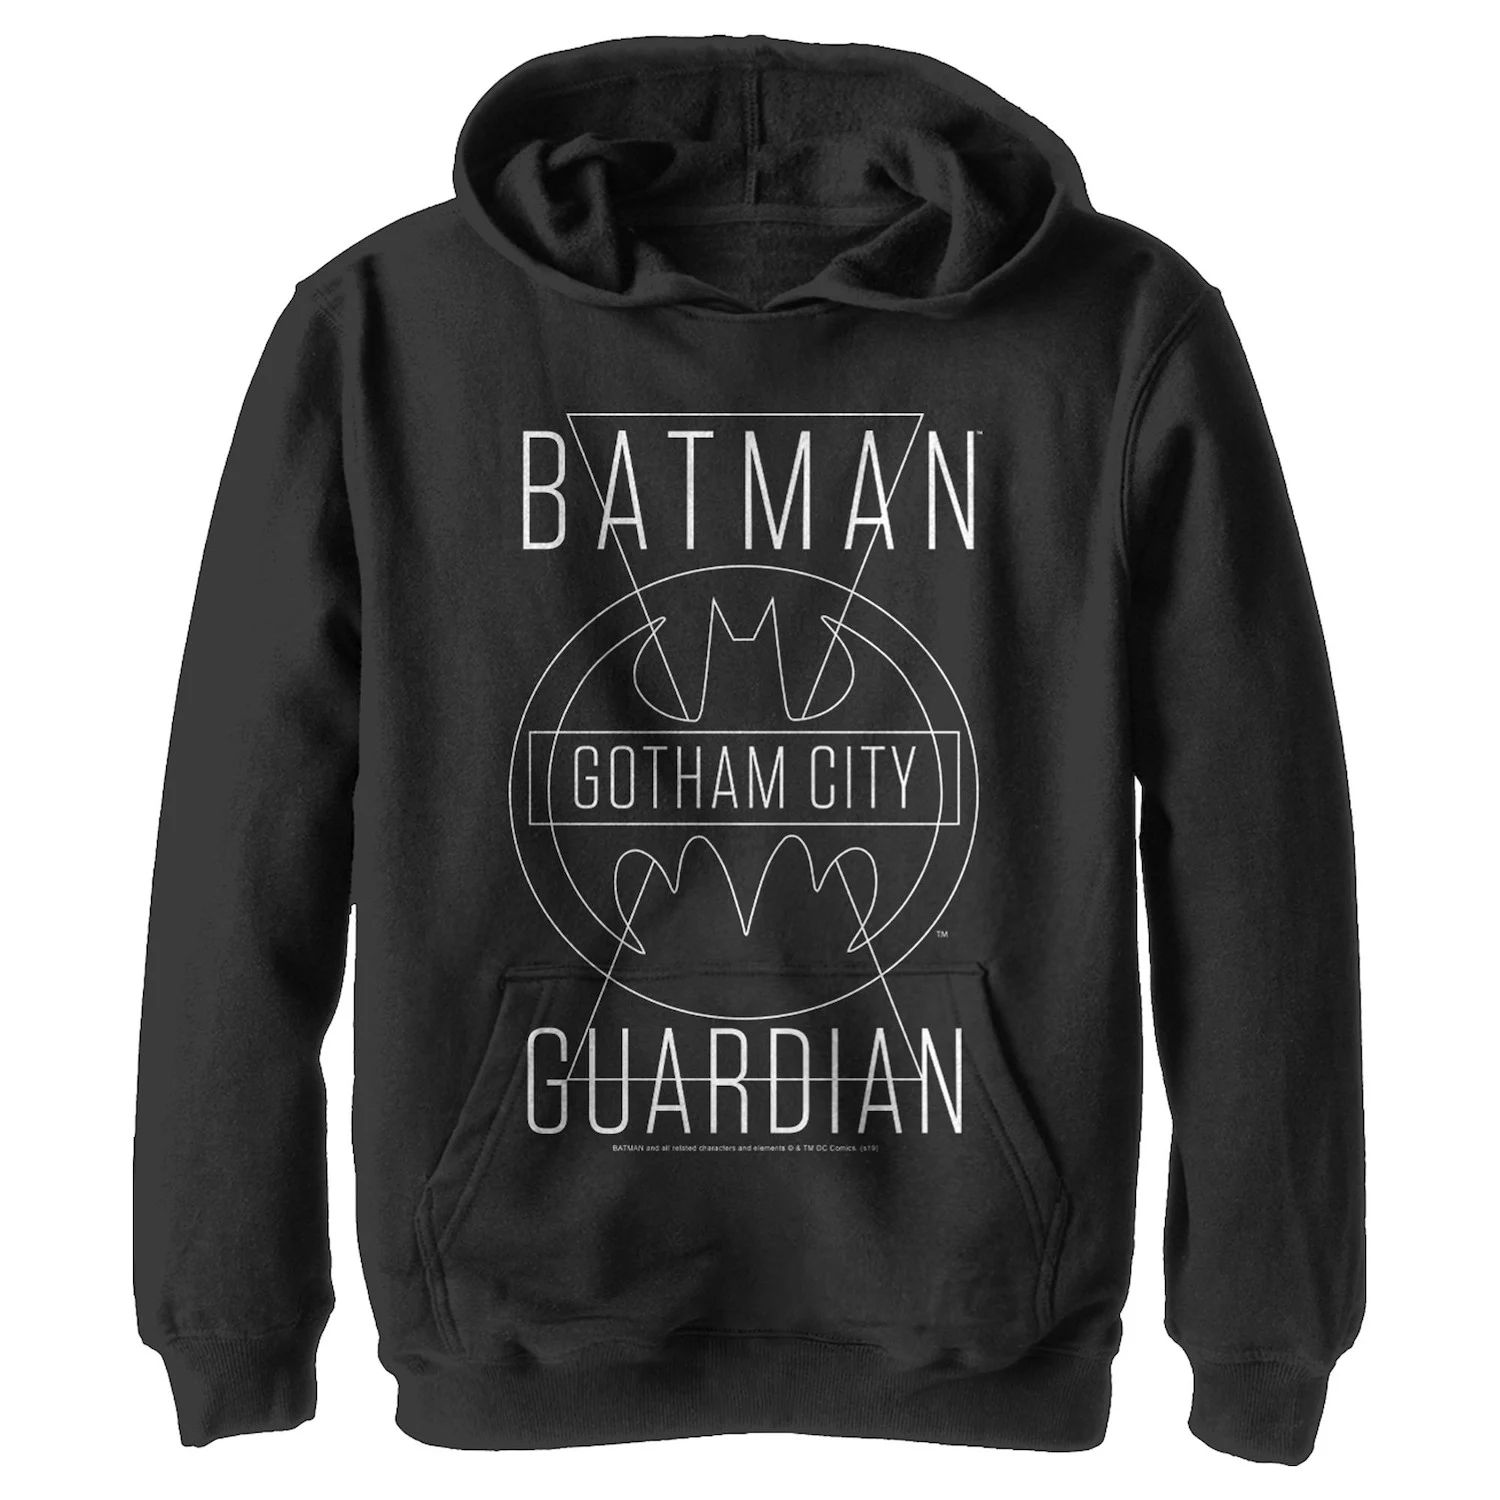 Пуловер с капюшоном и графическим рисунком для мальчиков 8–20 лет из комиксов DC Бэтмен Готэм-сити Guardian с текстовым плакатом DC Comics кружка dc comics